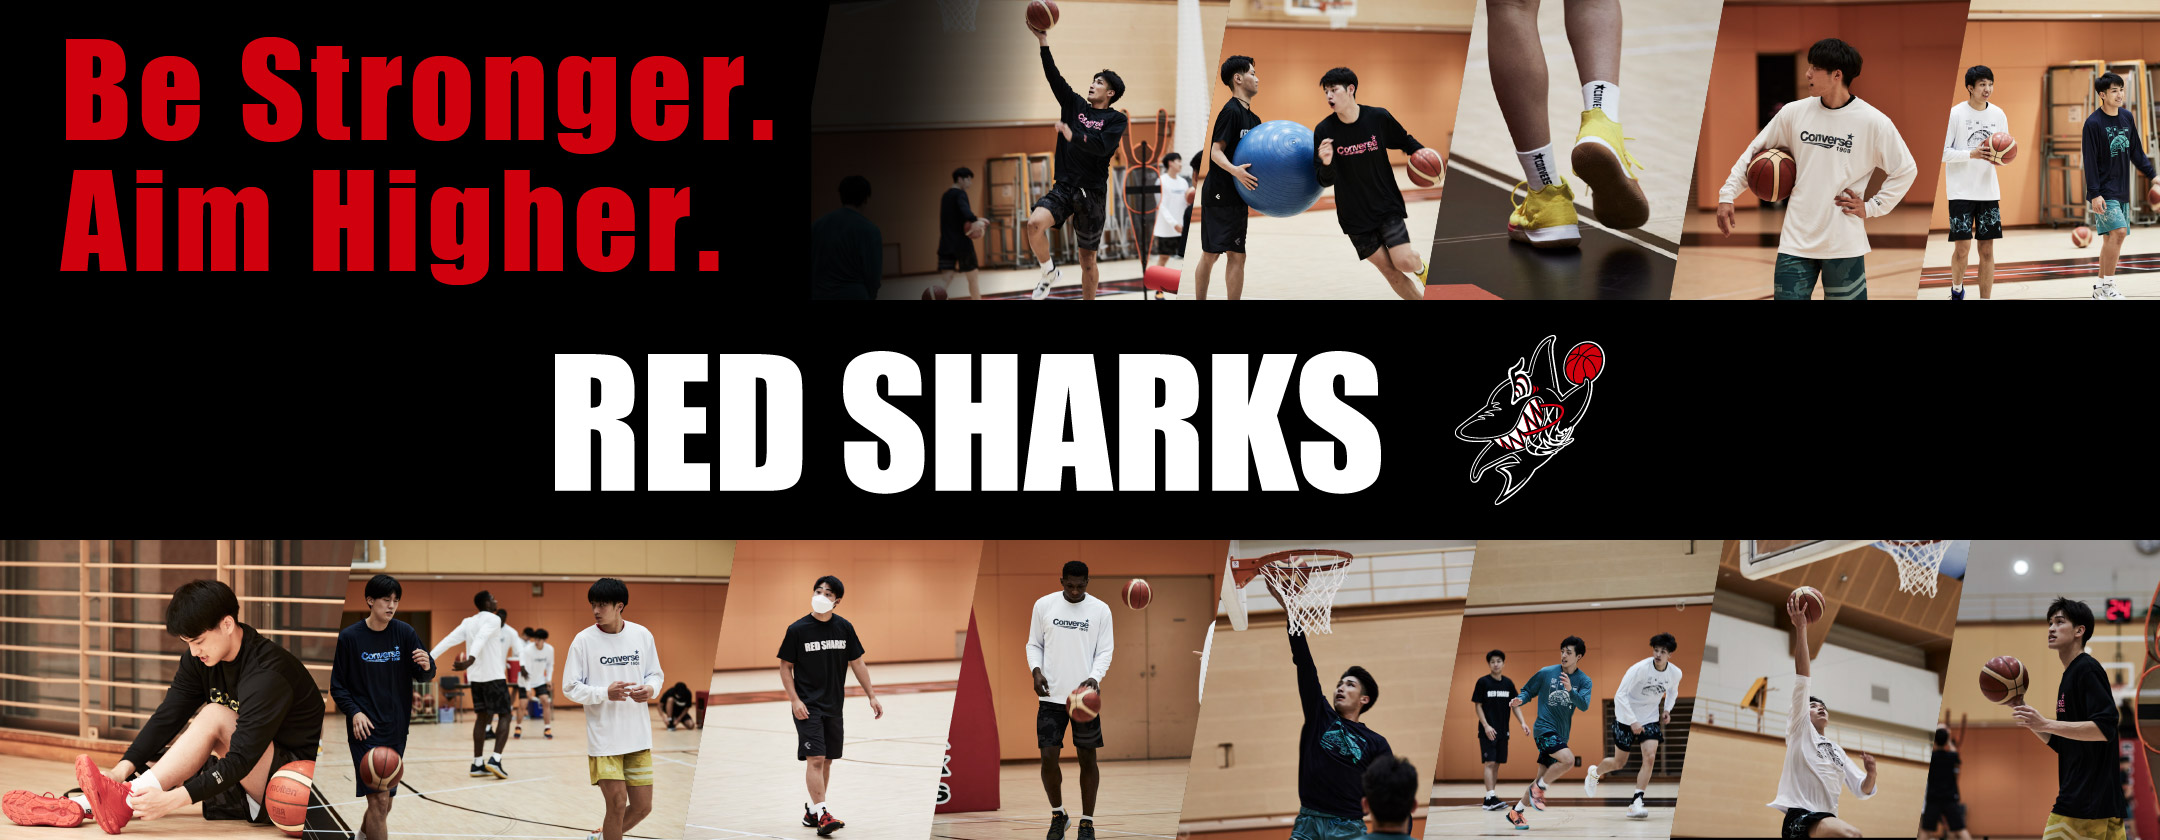 Be Stronger. Aim Higher. コンバース 日本大学男子バスケットボール部 RED SHARKS